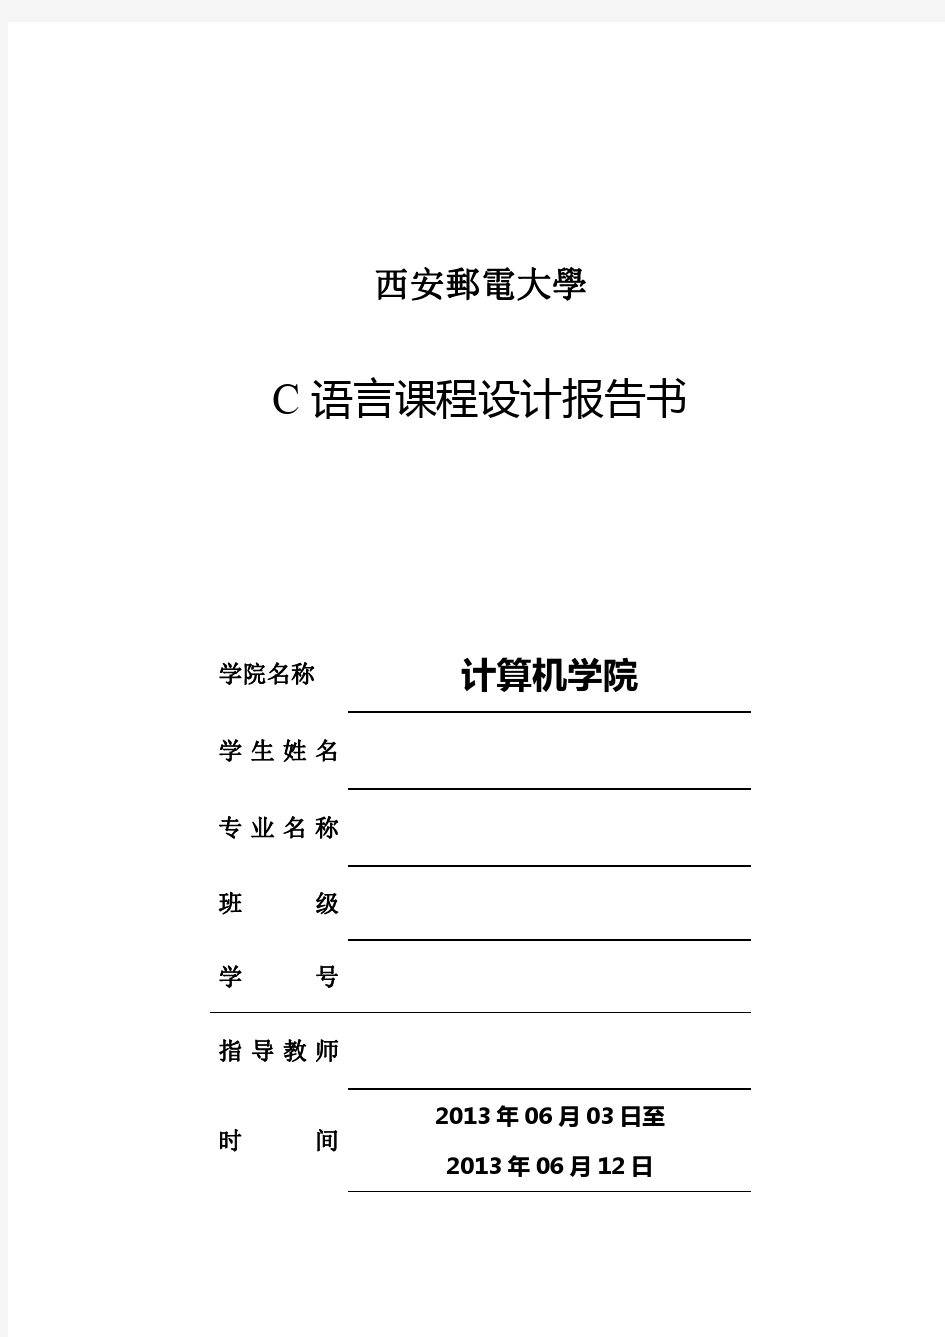 C语言课程设计报告 西安邮电大学